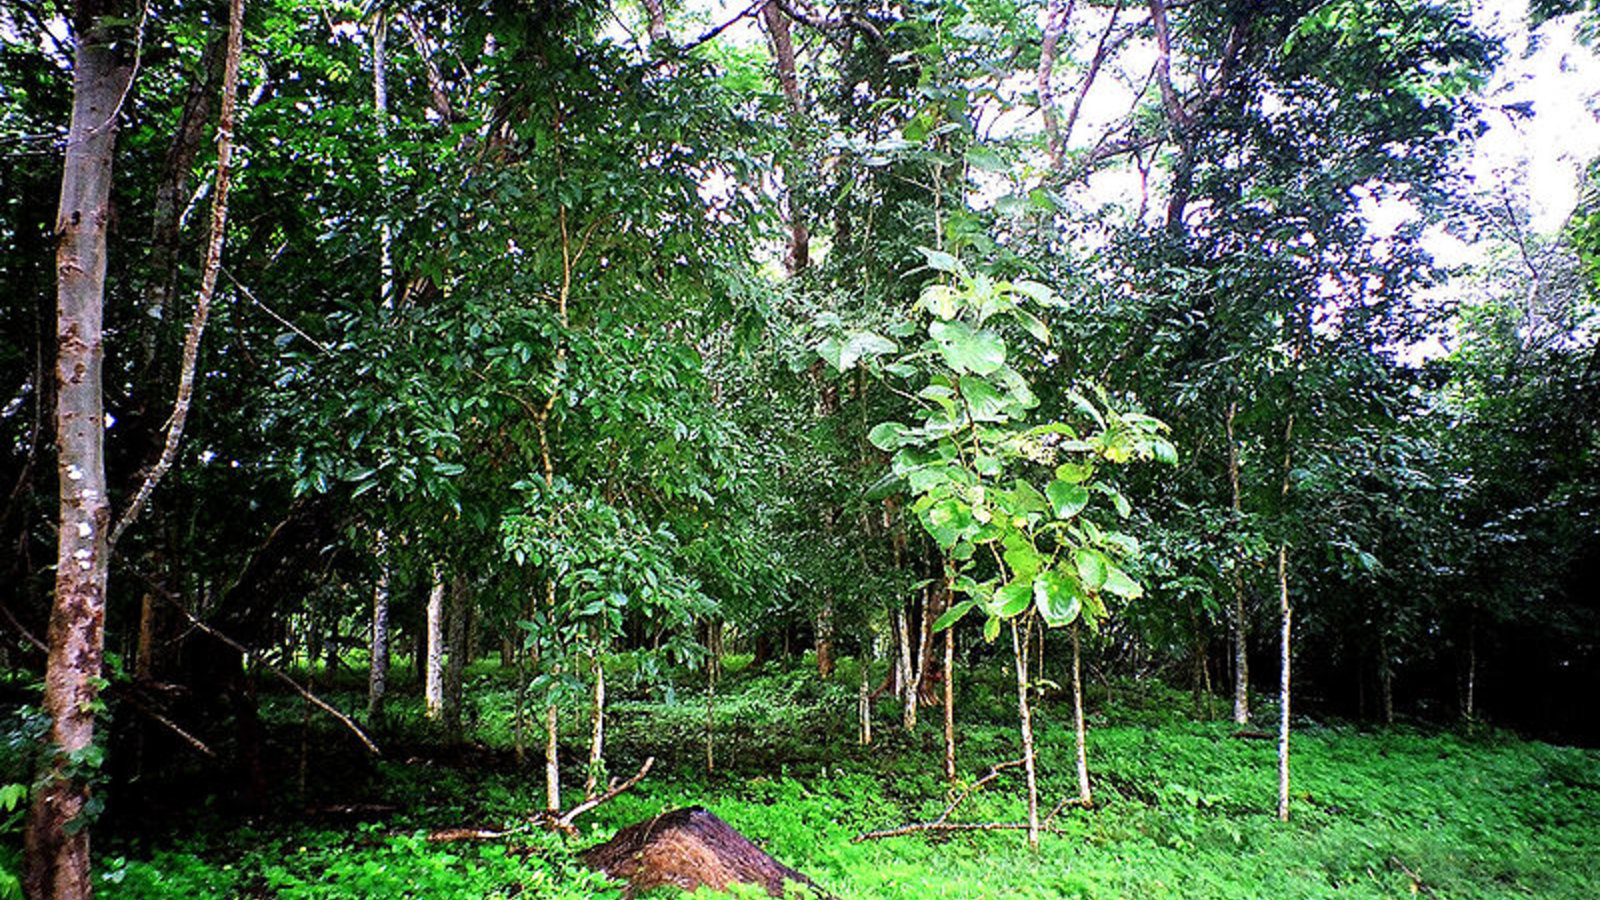 forest_thailand_wikicom.jpg